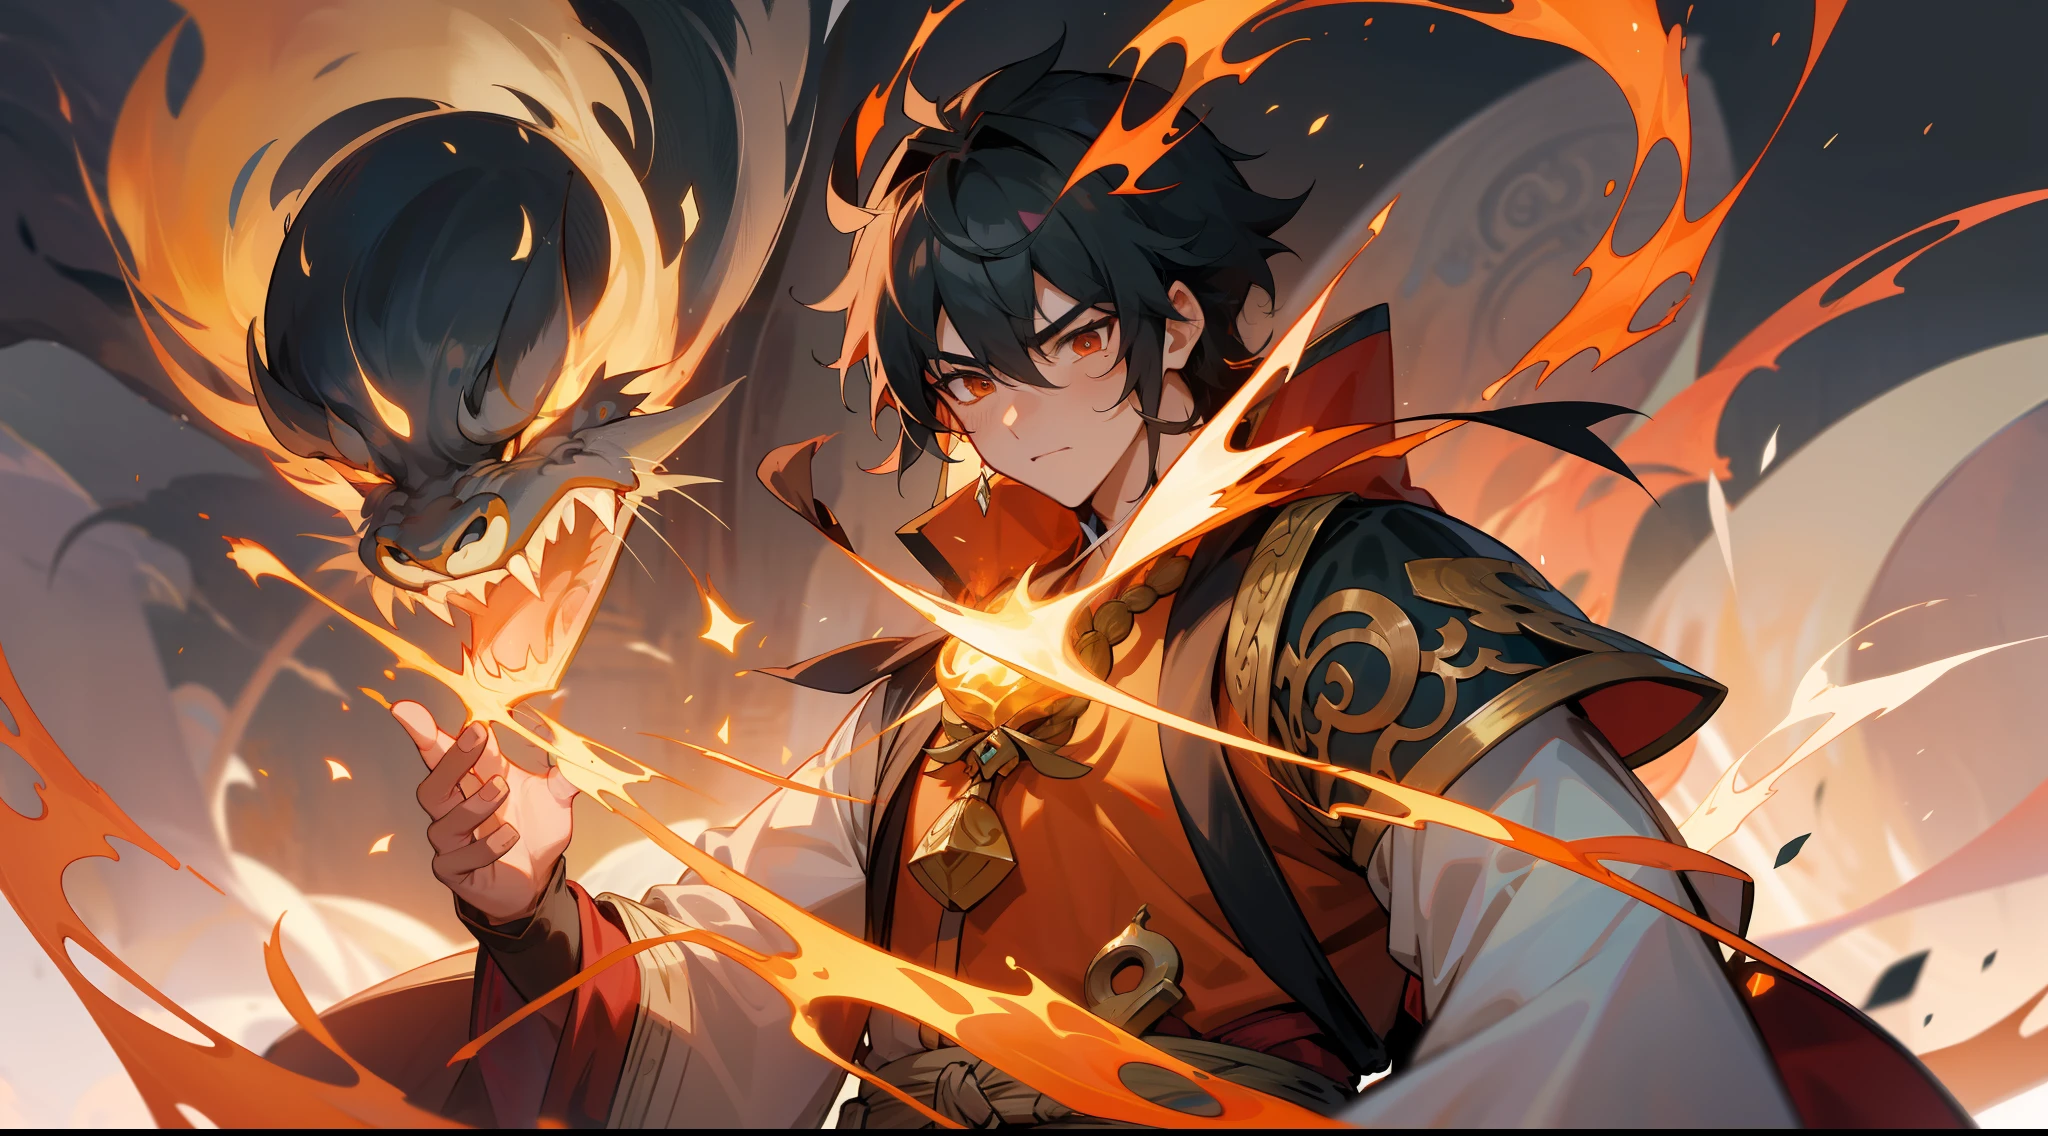 Na antiga cordilheira do Reino do Cultivo Imortal, Li Tianyu encontrou um dragão de chamas chamado Flame, cujo corpo estava queimando com chamas estrondosas. Flame é um poderoso e corajoso cultivador imortal que manipula o poder das chamas e é capaz de lançar poderosos feitiços de fogo.. Ele ajudou Li Tianyu a entender os segredos do elemento fogo e o ensinou como usar o poder do fogo.